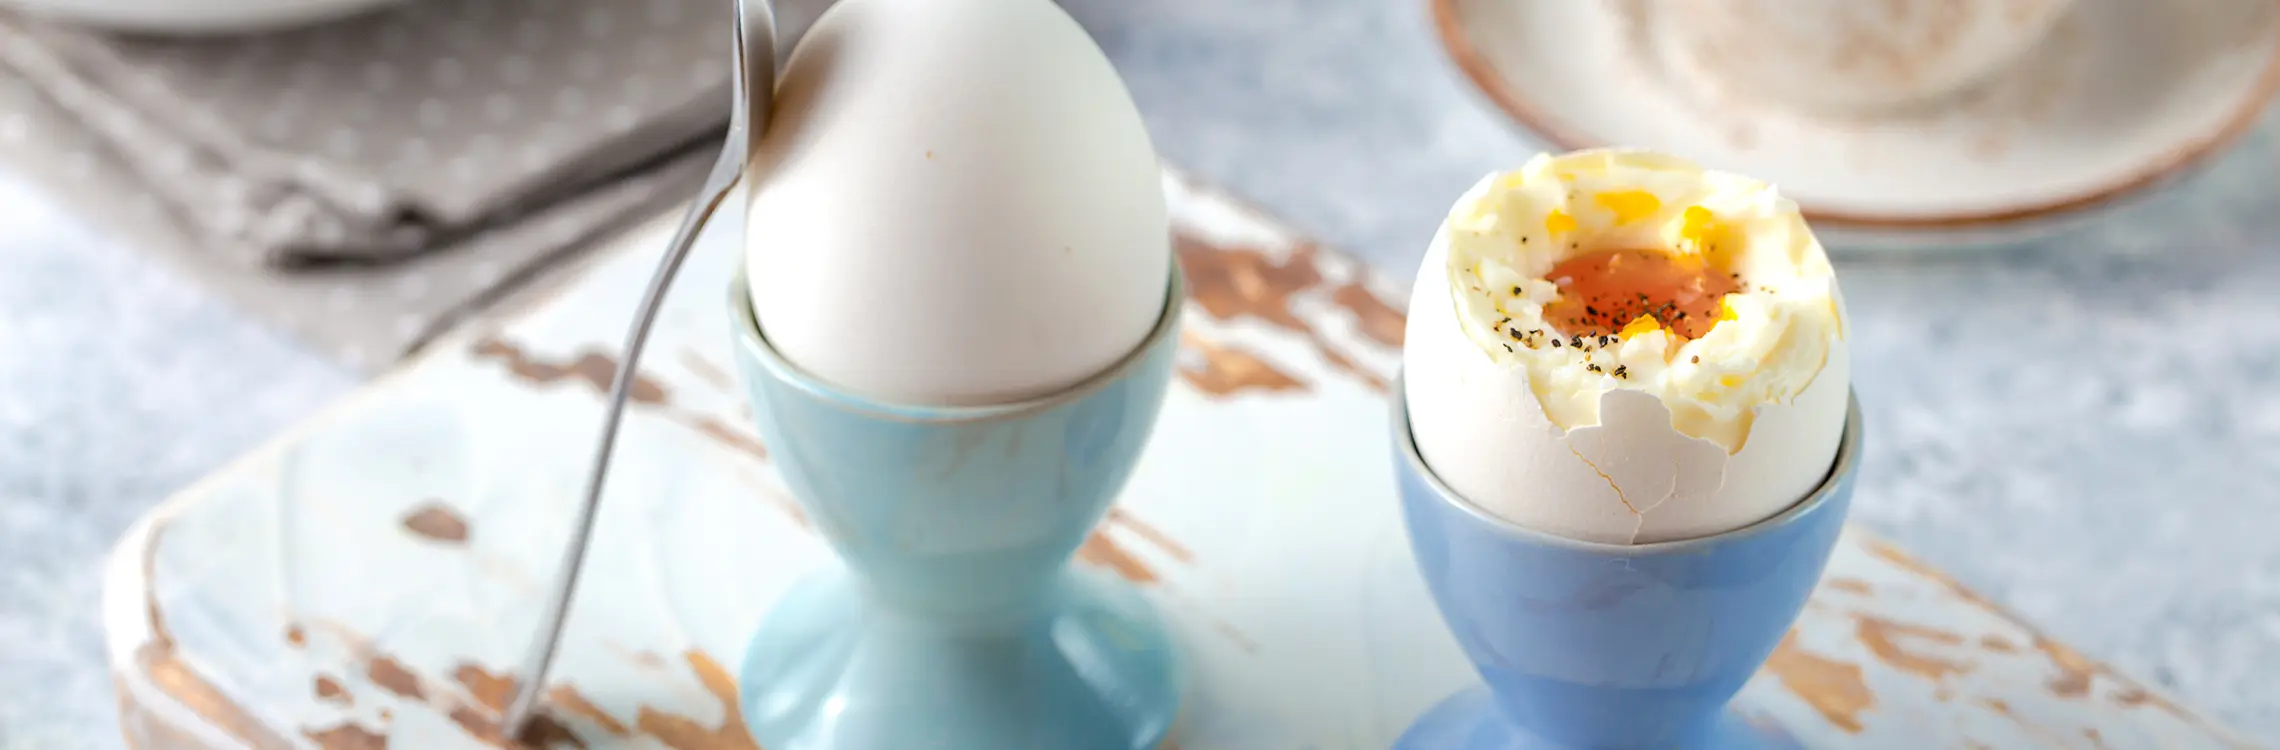 Sind Eier wirklich (un)gesund?